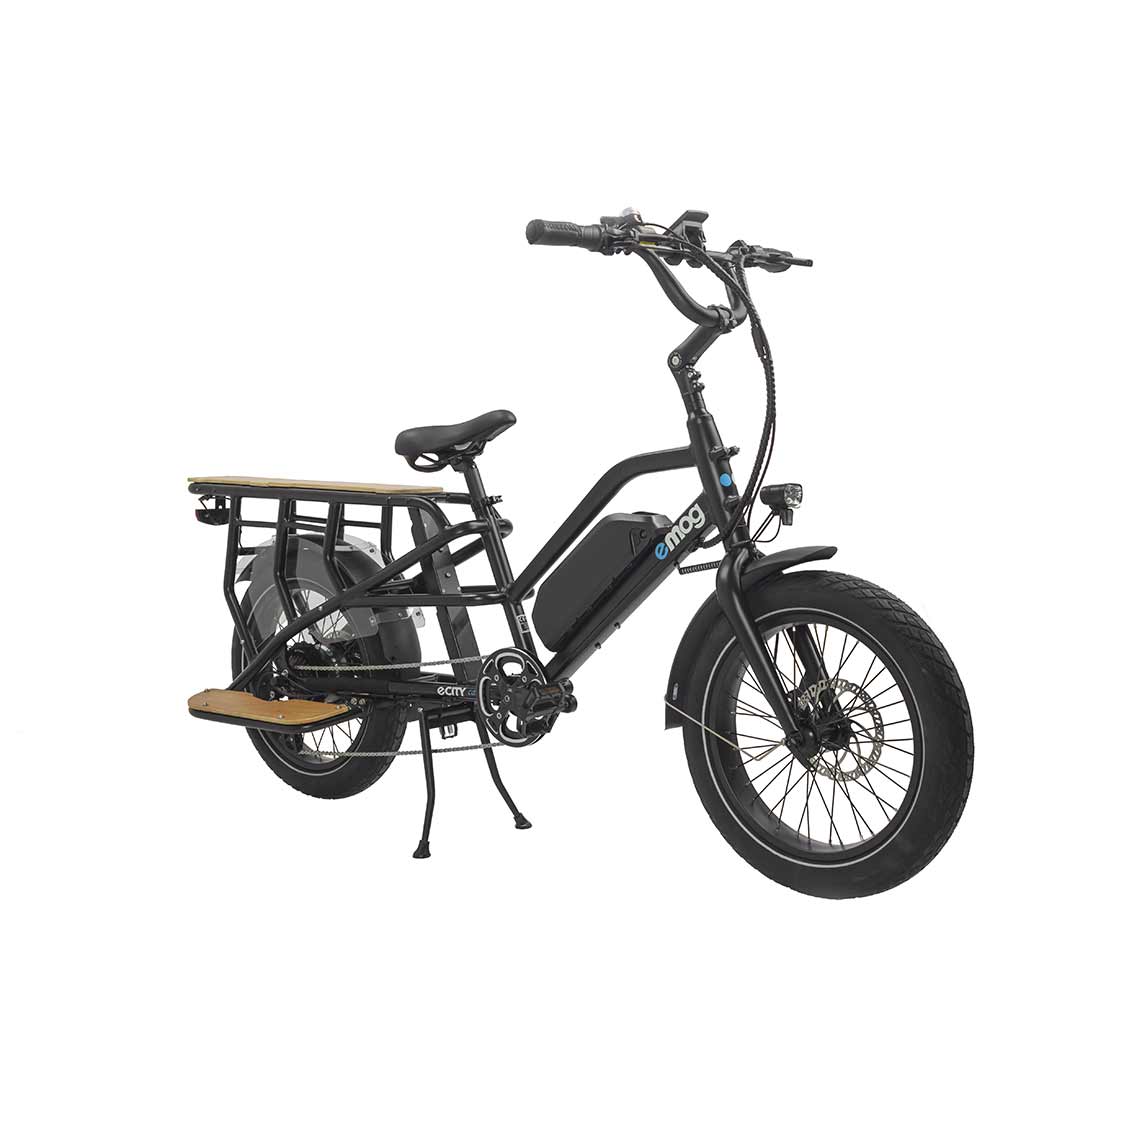 Test] Jean Fourche, ce mini vélo cargo fait-il le maximum?